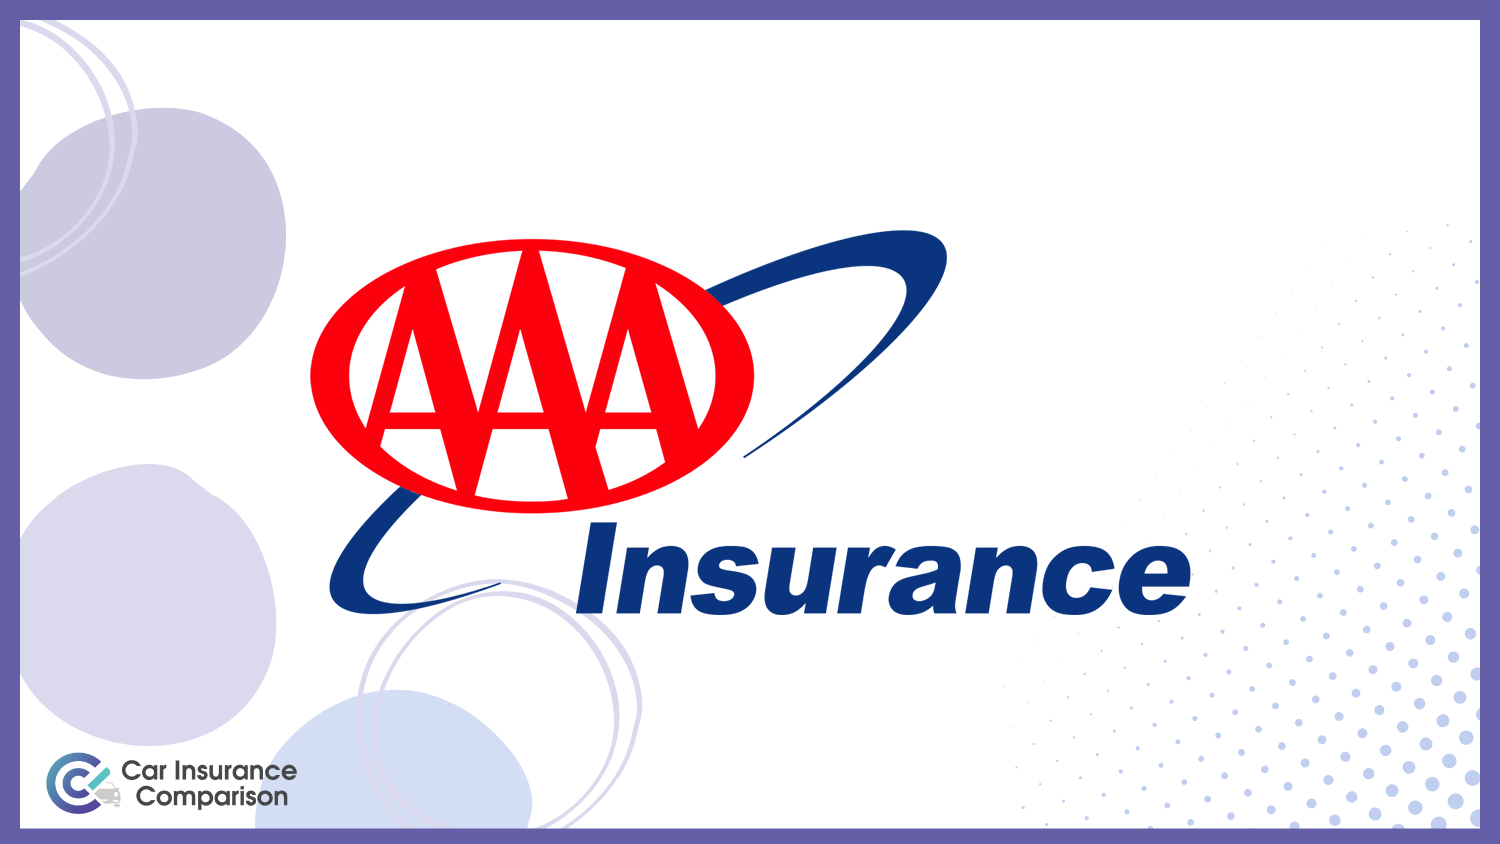 AAA: Best Car Insurance for Seniors